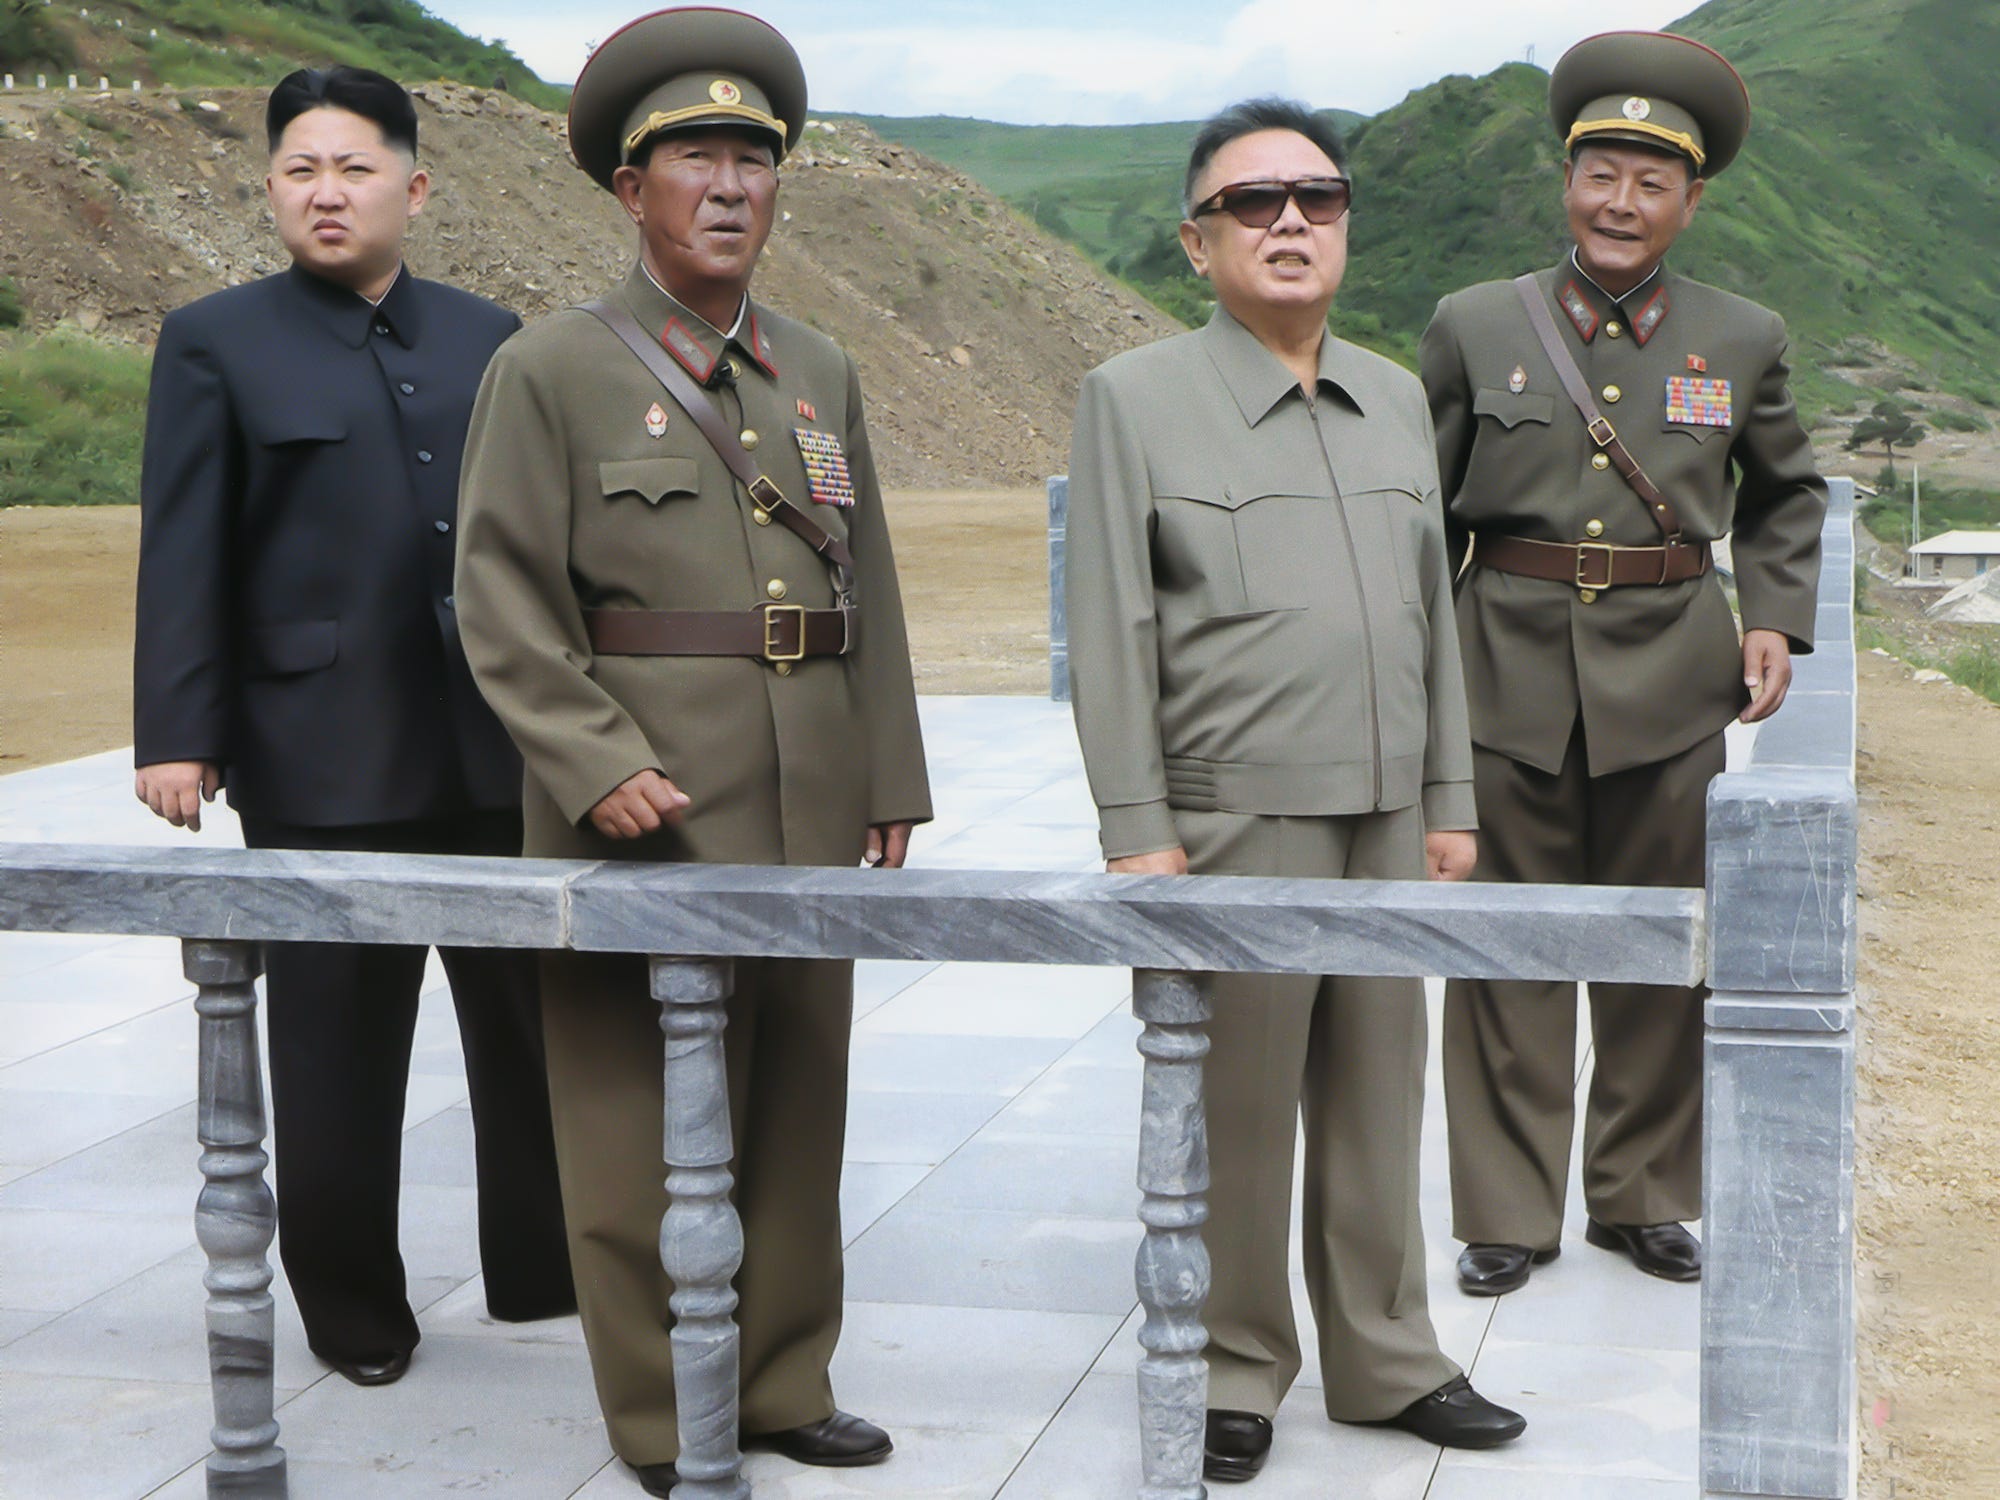 Kim Jong Il and Kim Jong Un in North Korea